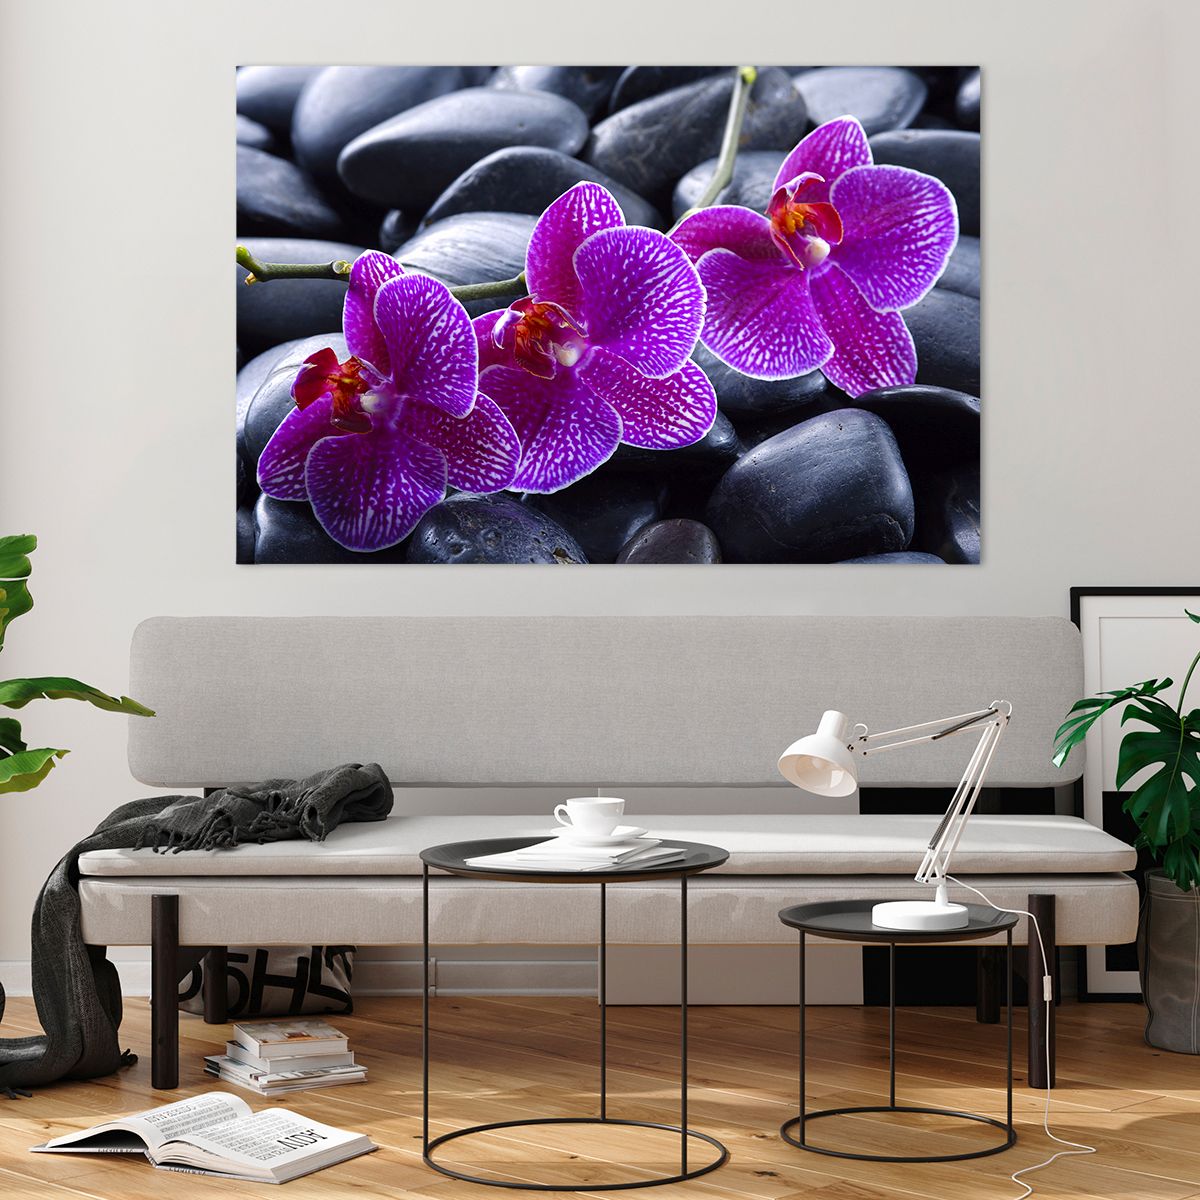 Bilder auf glas Blumen, Bilder auf glas Steine, Bilder auf glas Orchidee, Bilder auf glas Orchidee, Bilder auf glas Spa